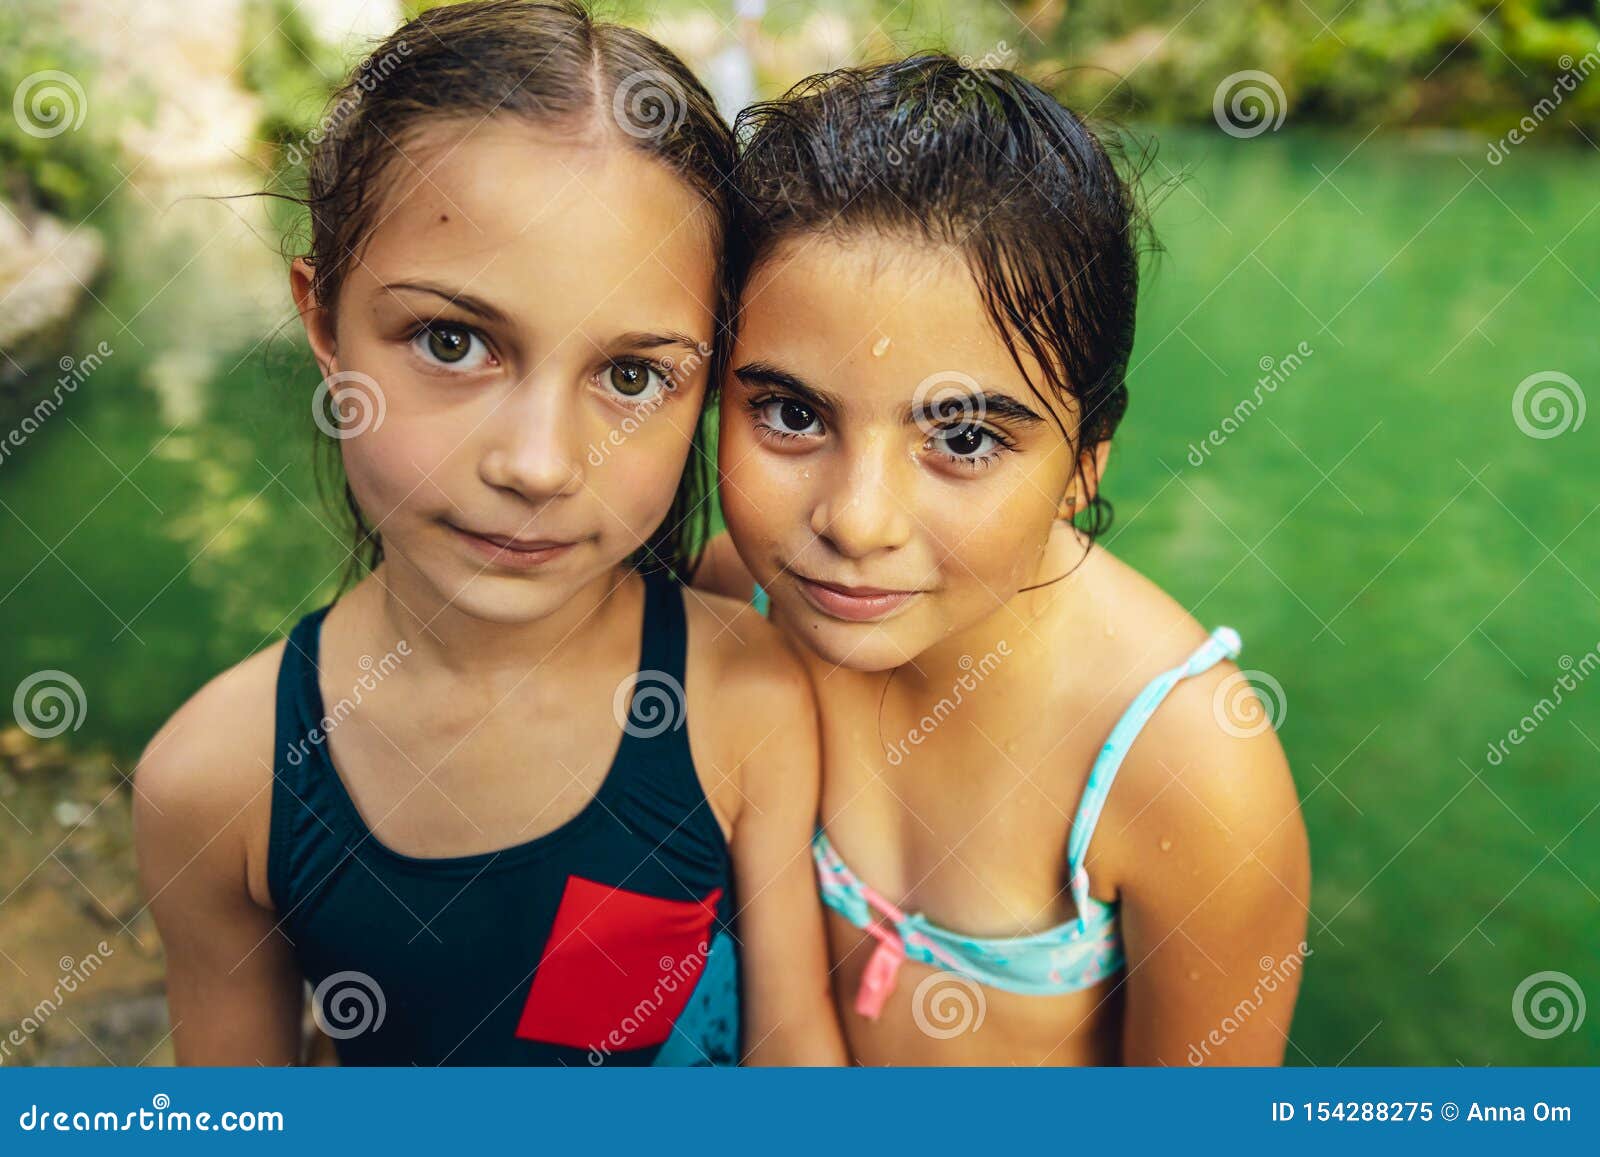 Little Girls Photos Pics